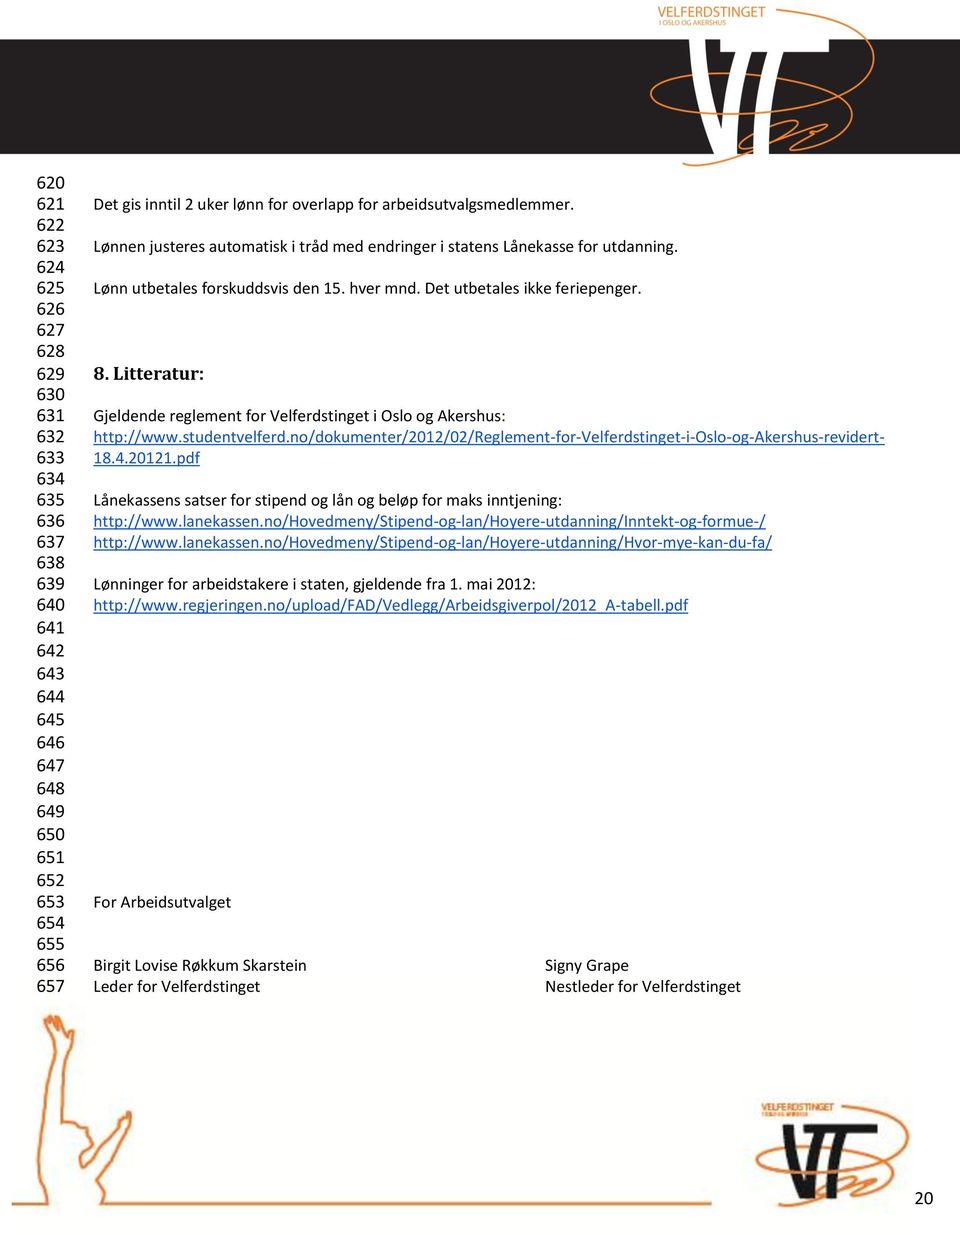 Litteratur: Gjeldende reglement for Velferdstinget i Oslo og Akershus: http://www.studentvelferd.no/dokumenter/2012/02/reglement-for-velferdstinget-i-oslo-og-akershus-revidert- 18.4.20121.